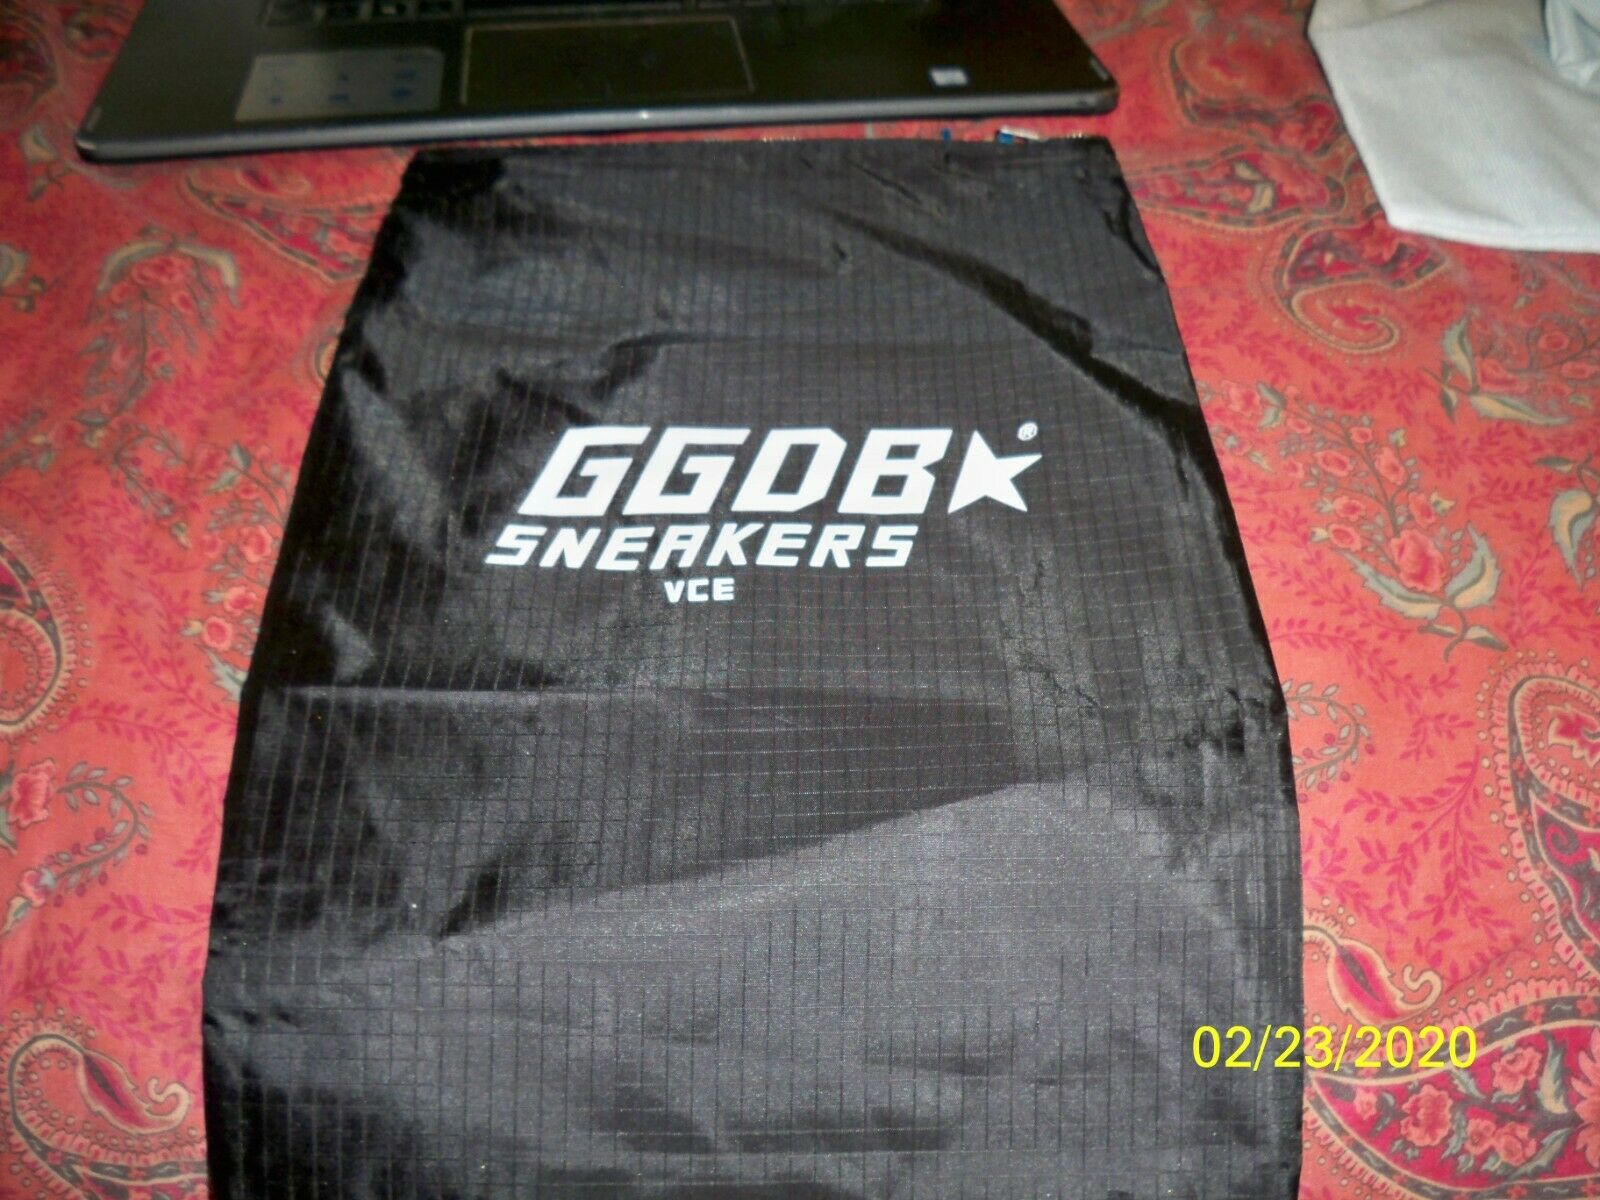 Ggdb Golden Goose Deluxe Brand Sneaker Dust Bag, 15" X 11.25" Black